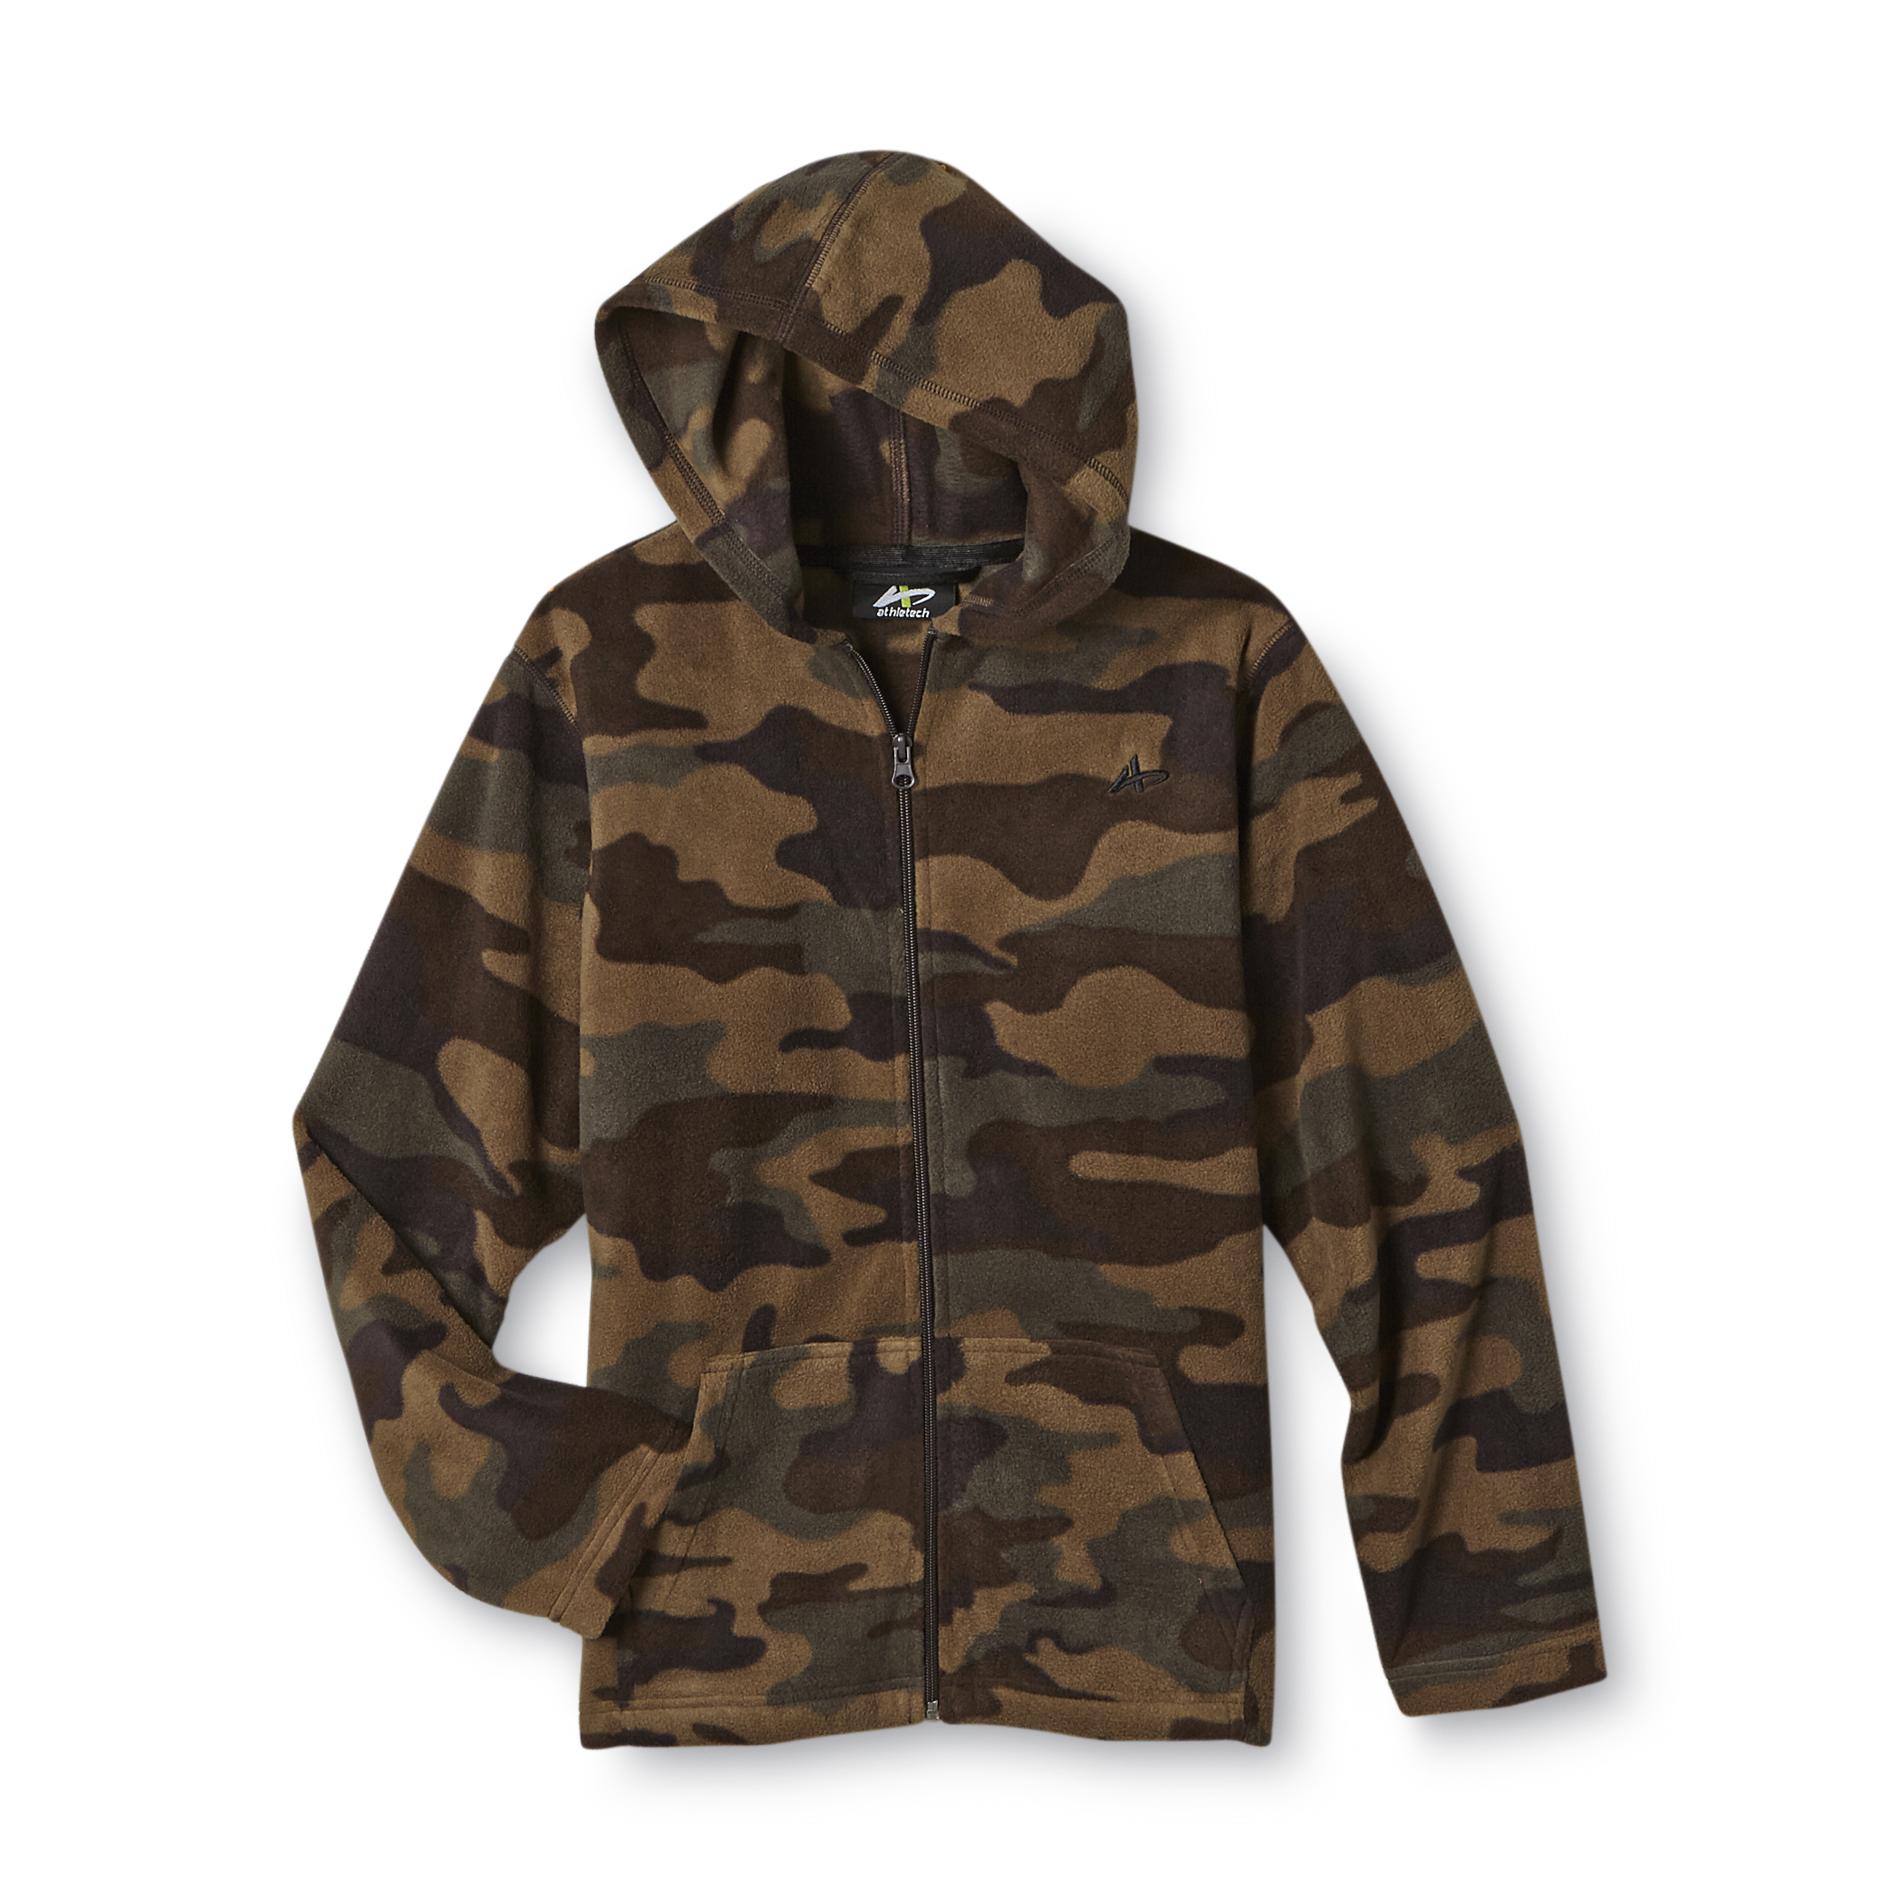 Athletech Boy's Fleece Hoodie Jacket - Camouflage